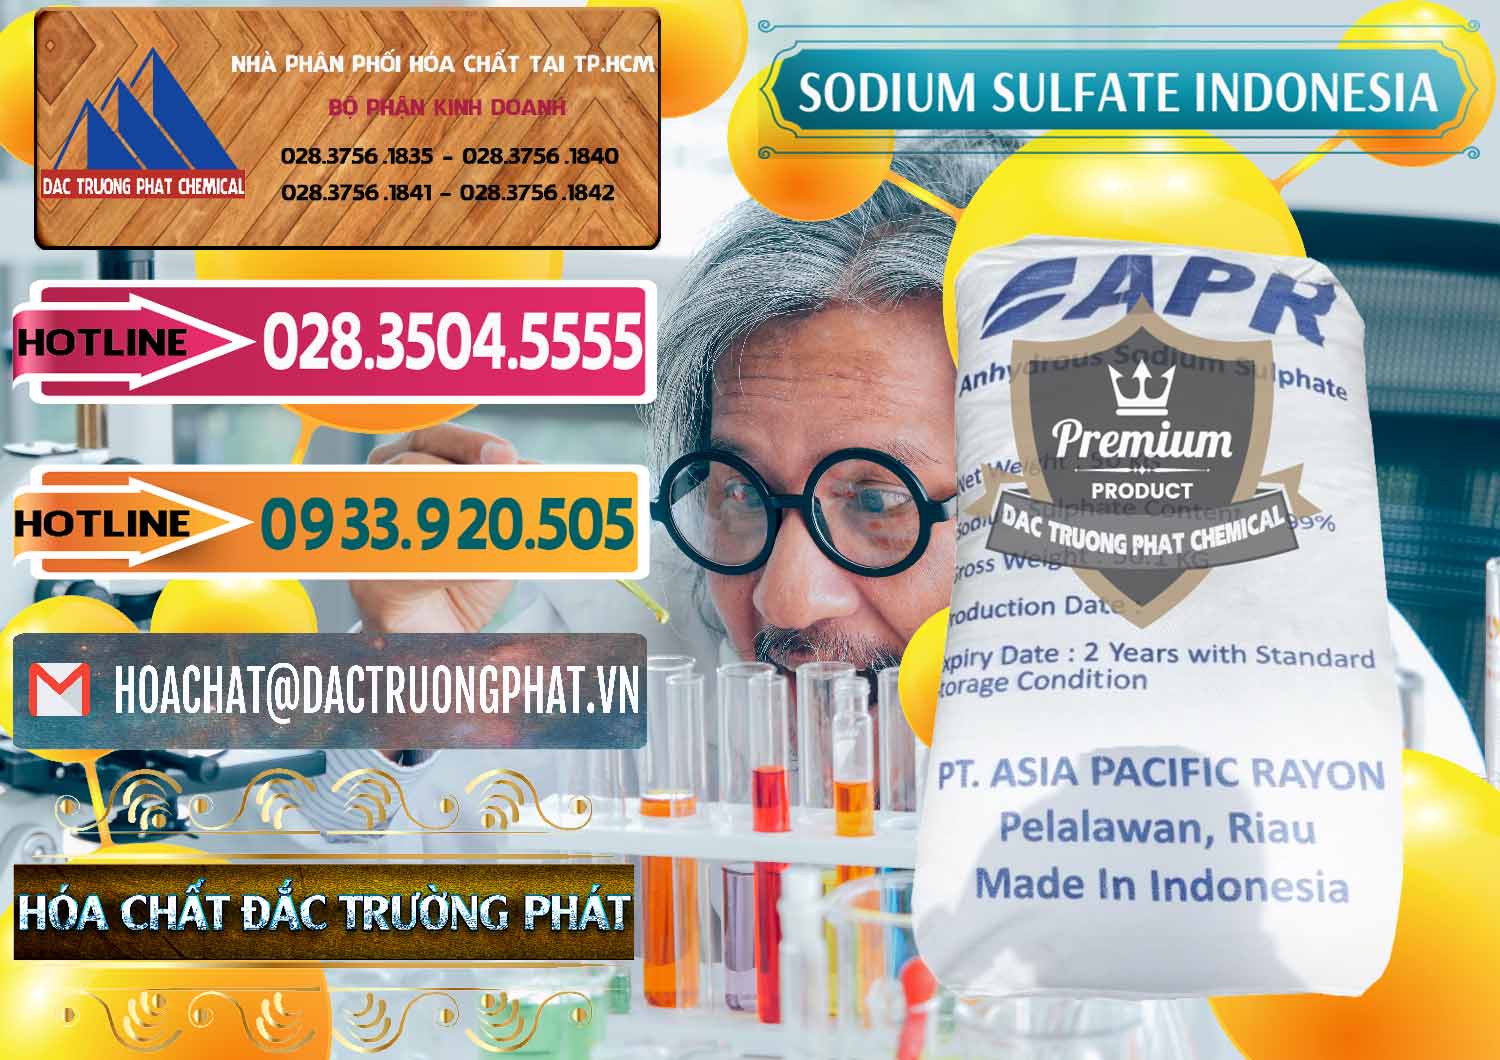 Công ty chuyên bán - cung ứng Sodium Sulphate - Muối Sunfat Na2SO4 APR Indonesia - 0460 - Cty bán _ phân phối hóa chất tại TP.HCM - dactruongphat.vn